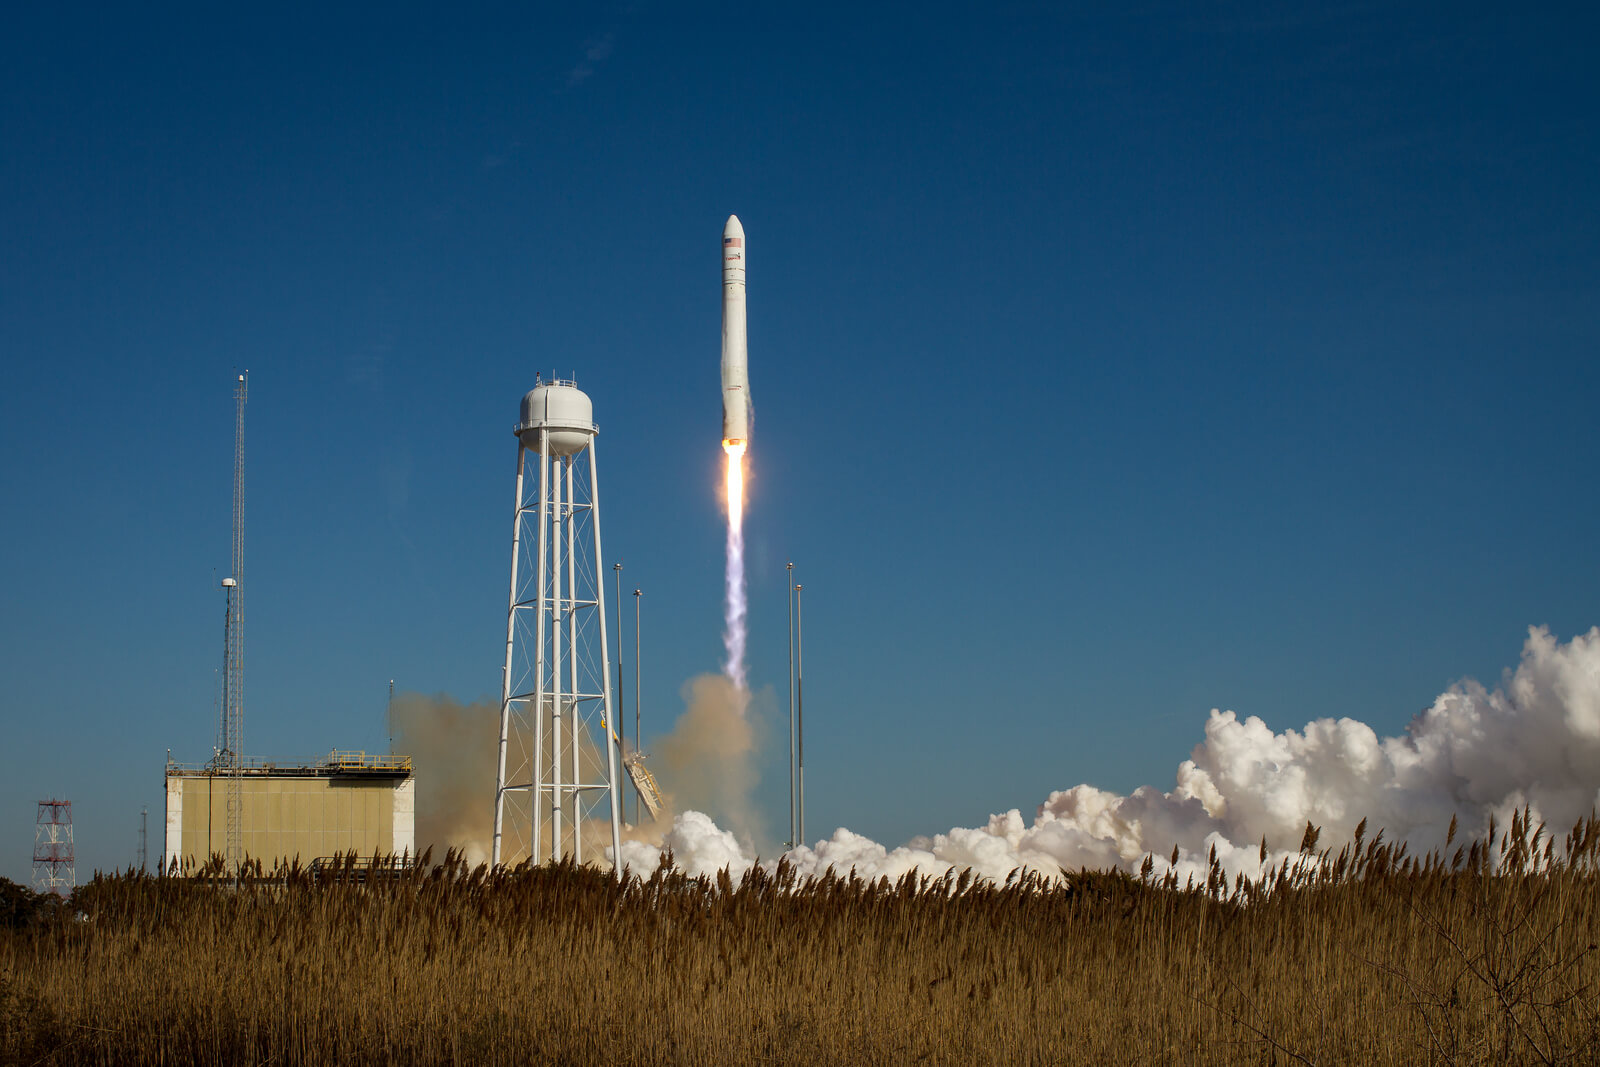 تم إطلاق صاروخ أنتاريس من شركة أوربيتال ساينسز في 9 يناير 2014، تلاه الإطلاق من مركز والوبس الفضائي بولاية فيرجينيا في مهمة إمداد إلى محطة الفضاء الدولية على متن المركبة الفضائية سيجنوس. الصورة: ناسا